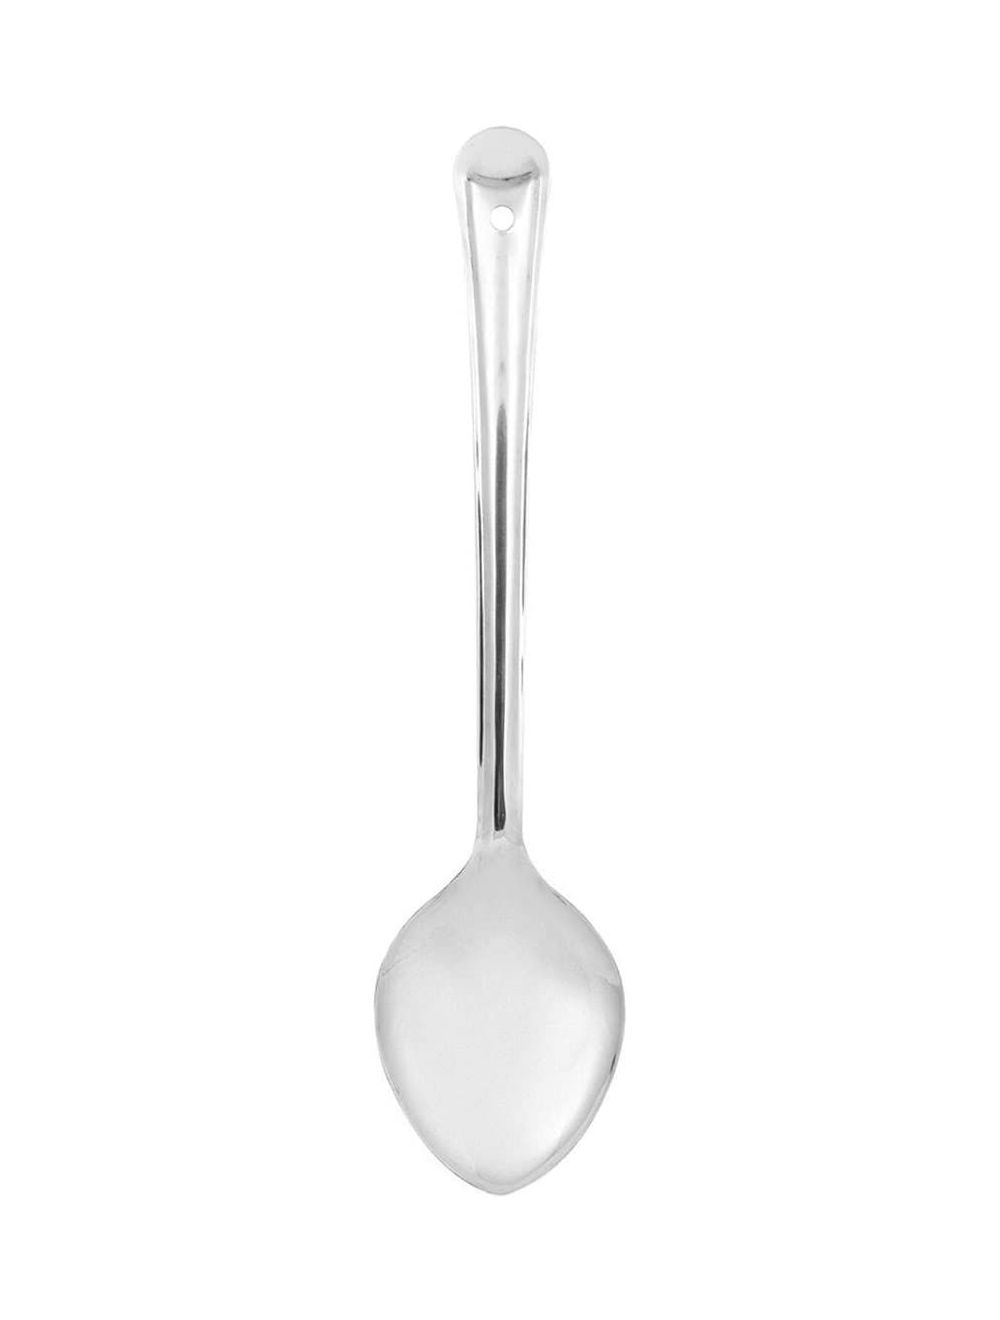 Raj 8 cm Basting Spoon-BS0006,Silver